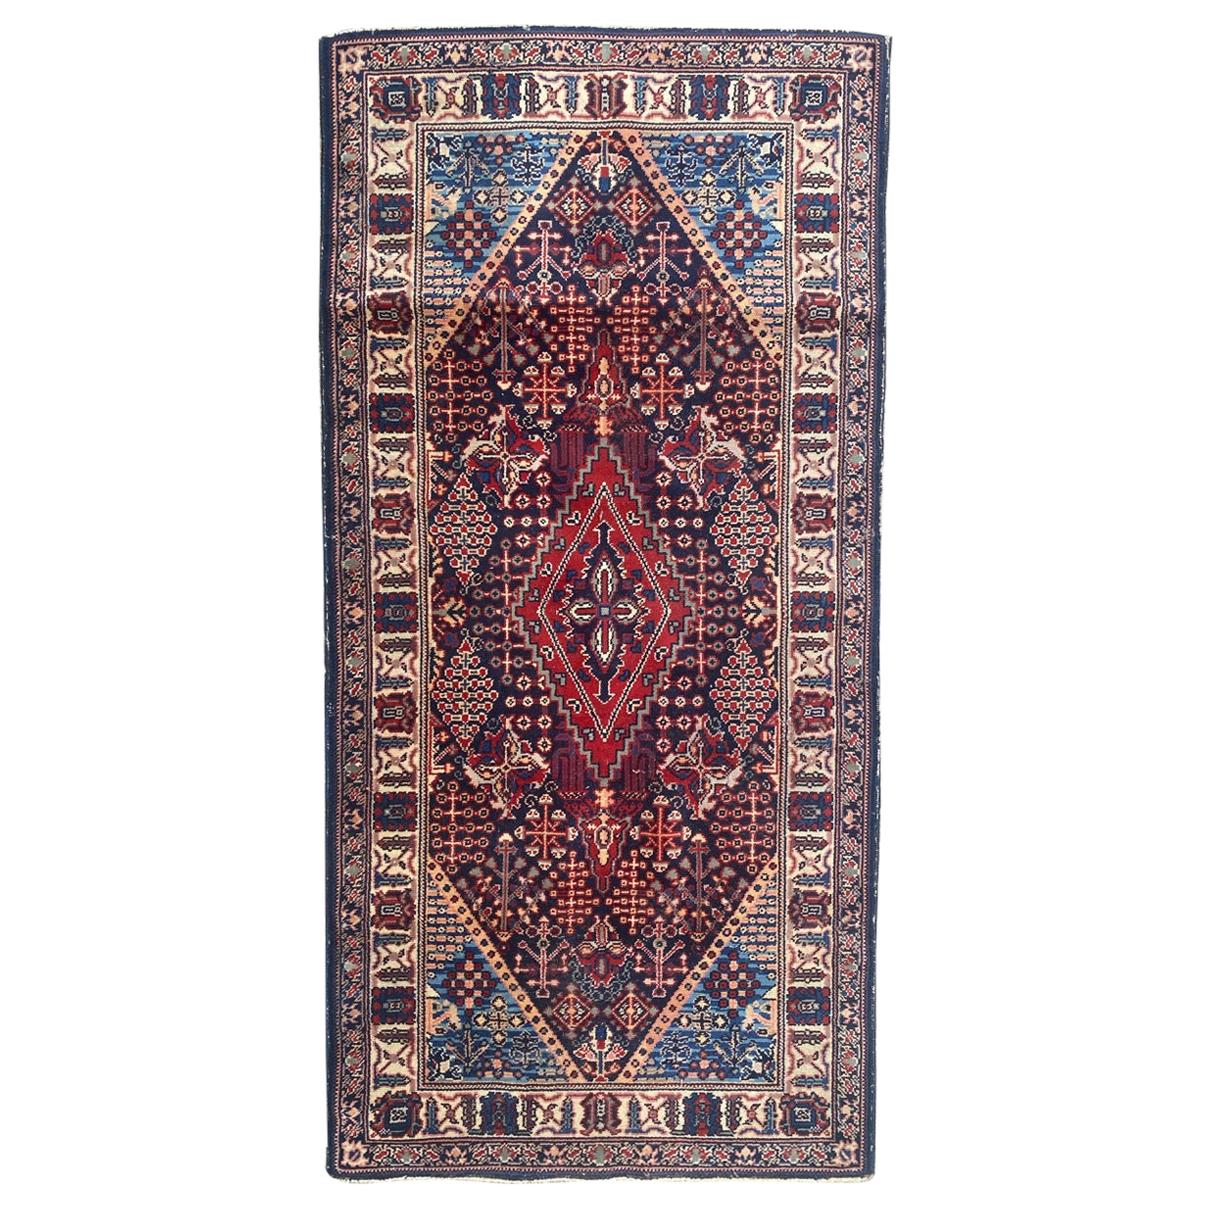 Schöner französischer Vintage-Teppich im persischen Design, geknüpft